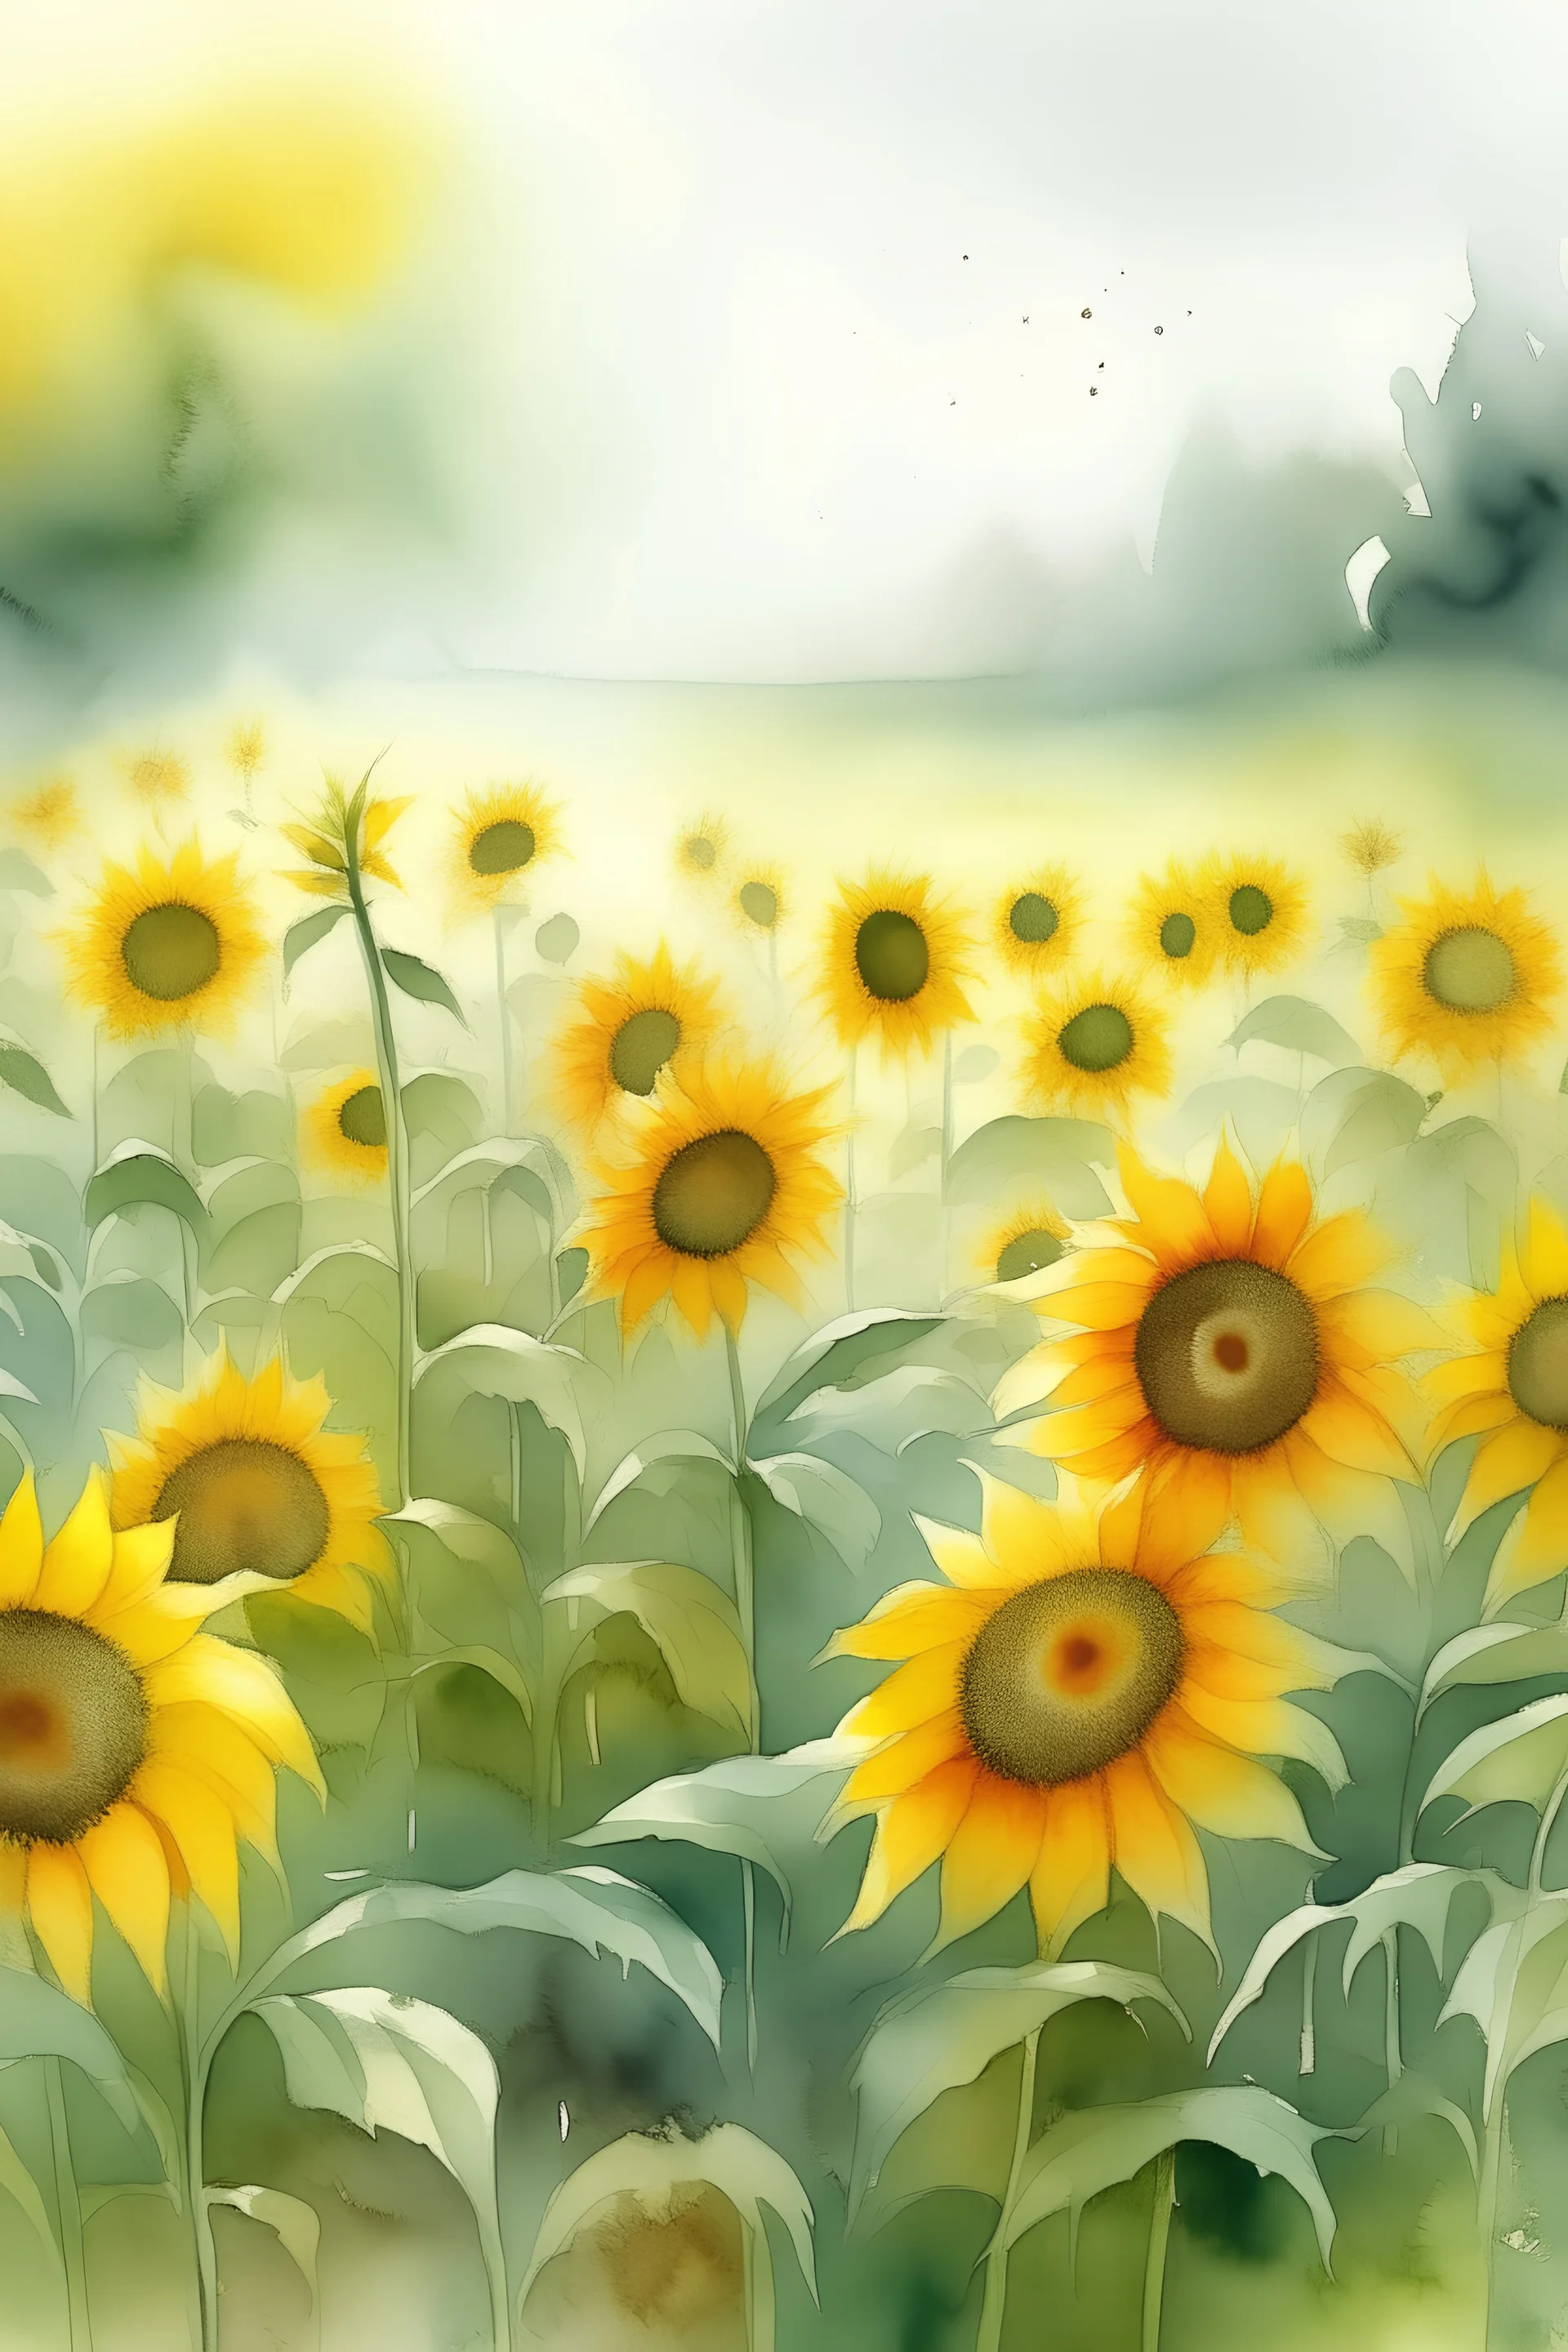 soft misty field of sunflowers in watercolor